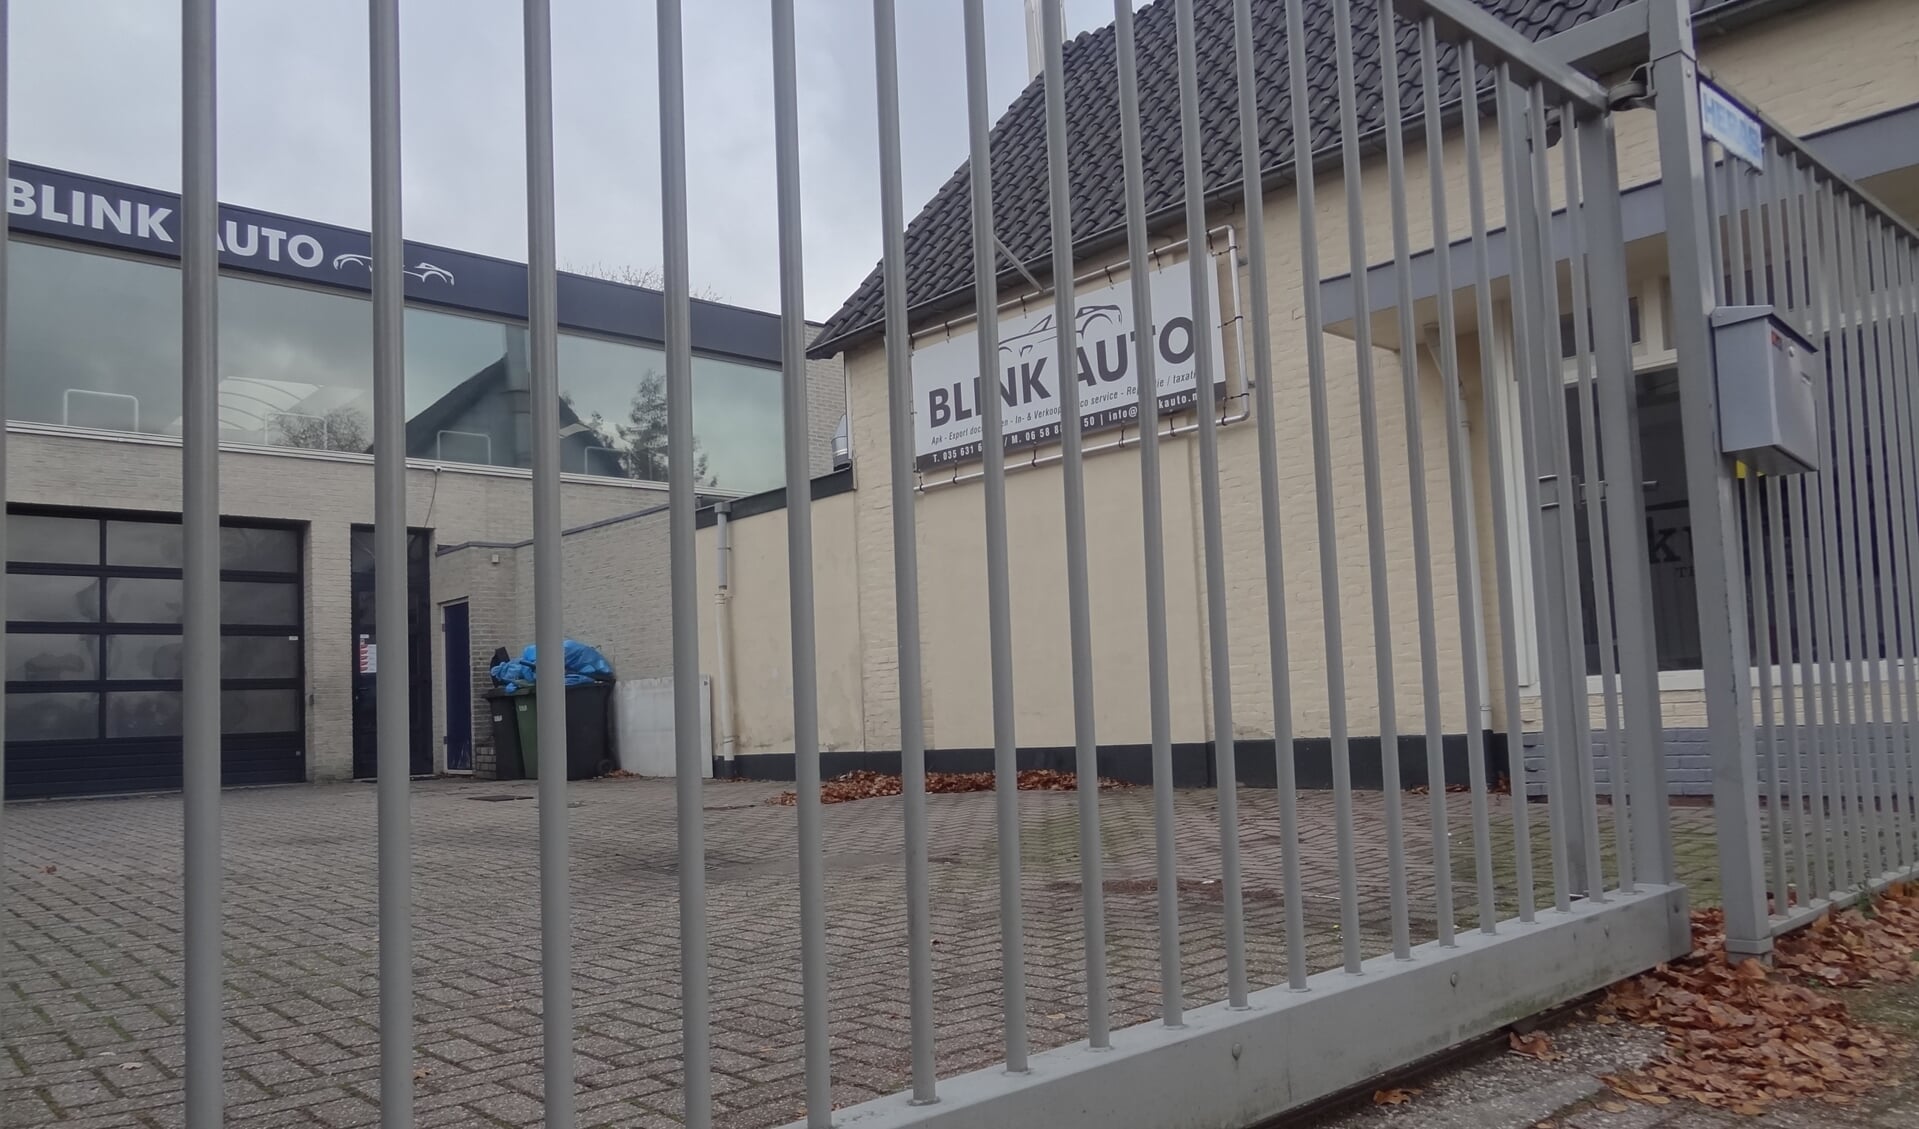 Het hek van Garage Blink aan de Nieuweweg is dicht en blijft op last van de burgemeester tot 8 november volgend jaar dicht.